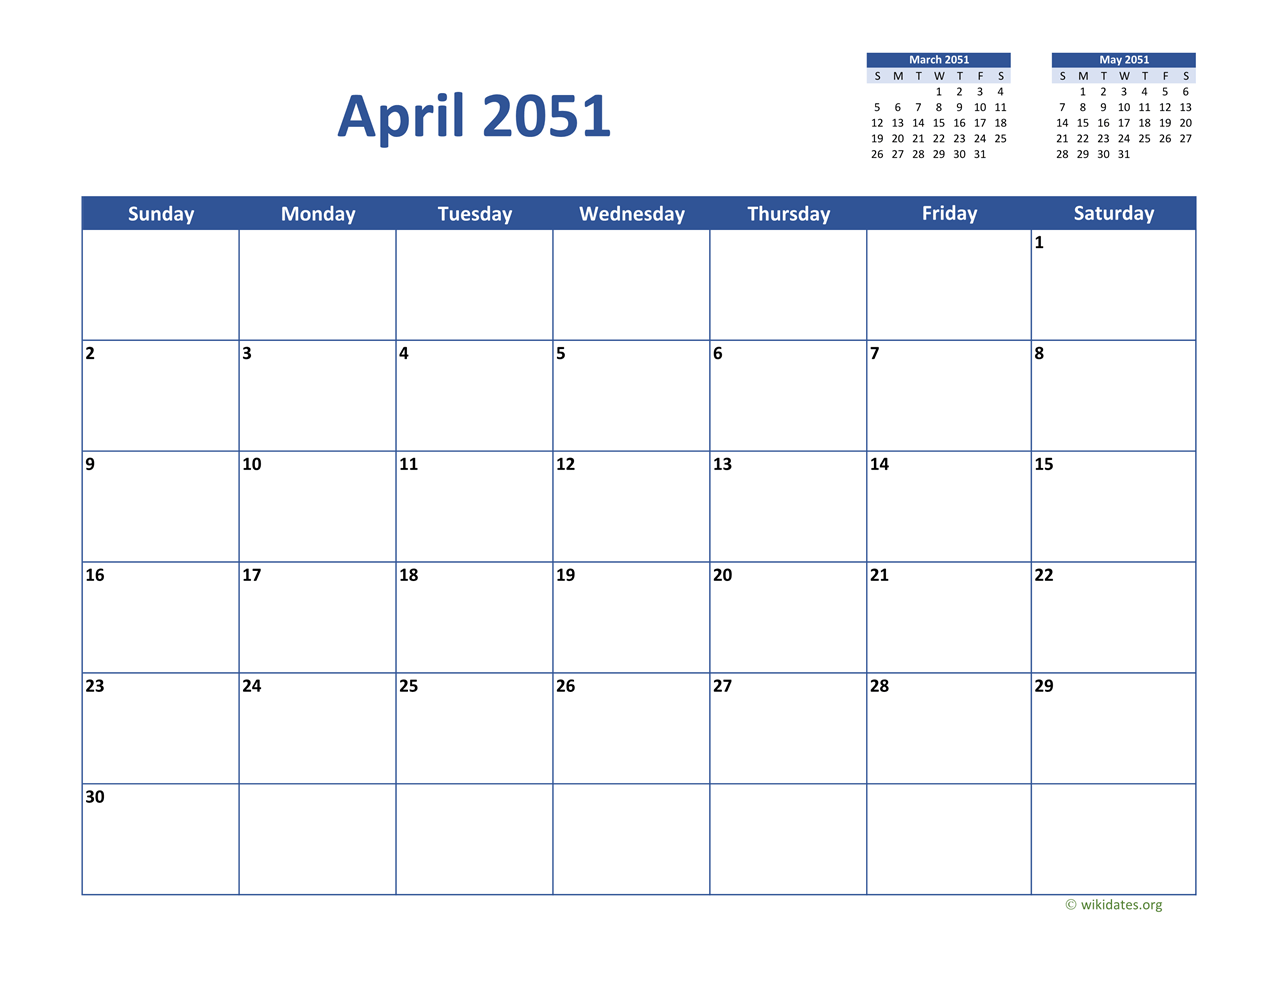 April 2051 Calendar Classic | WikiDates.org